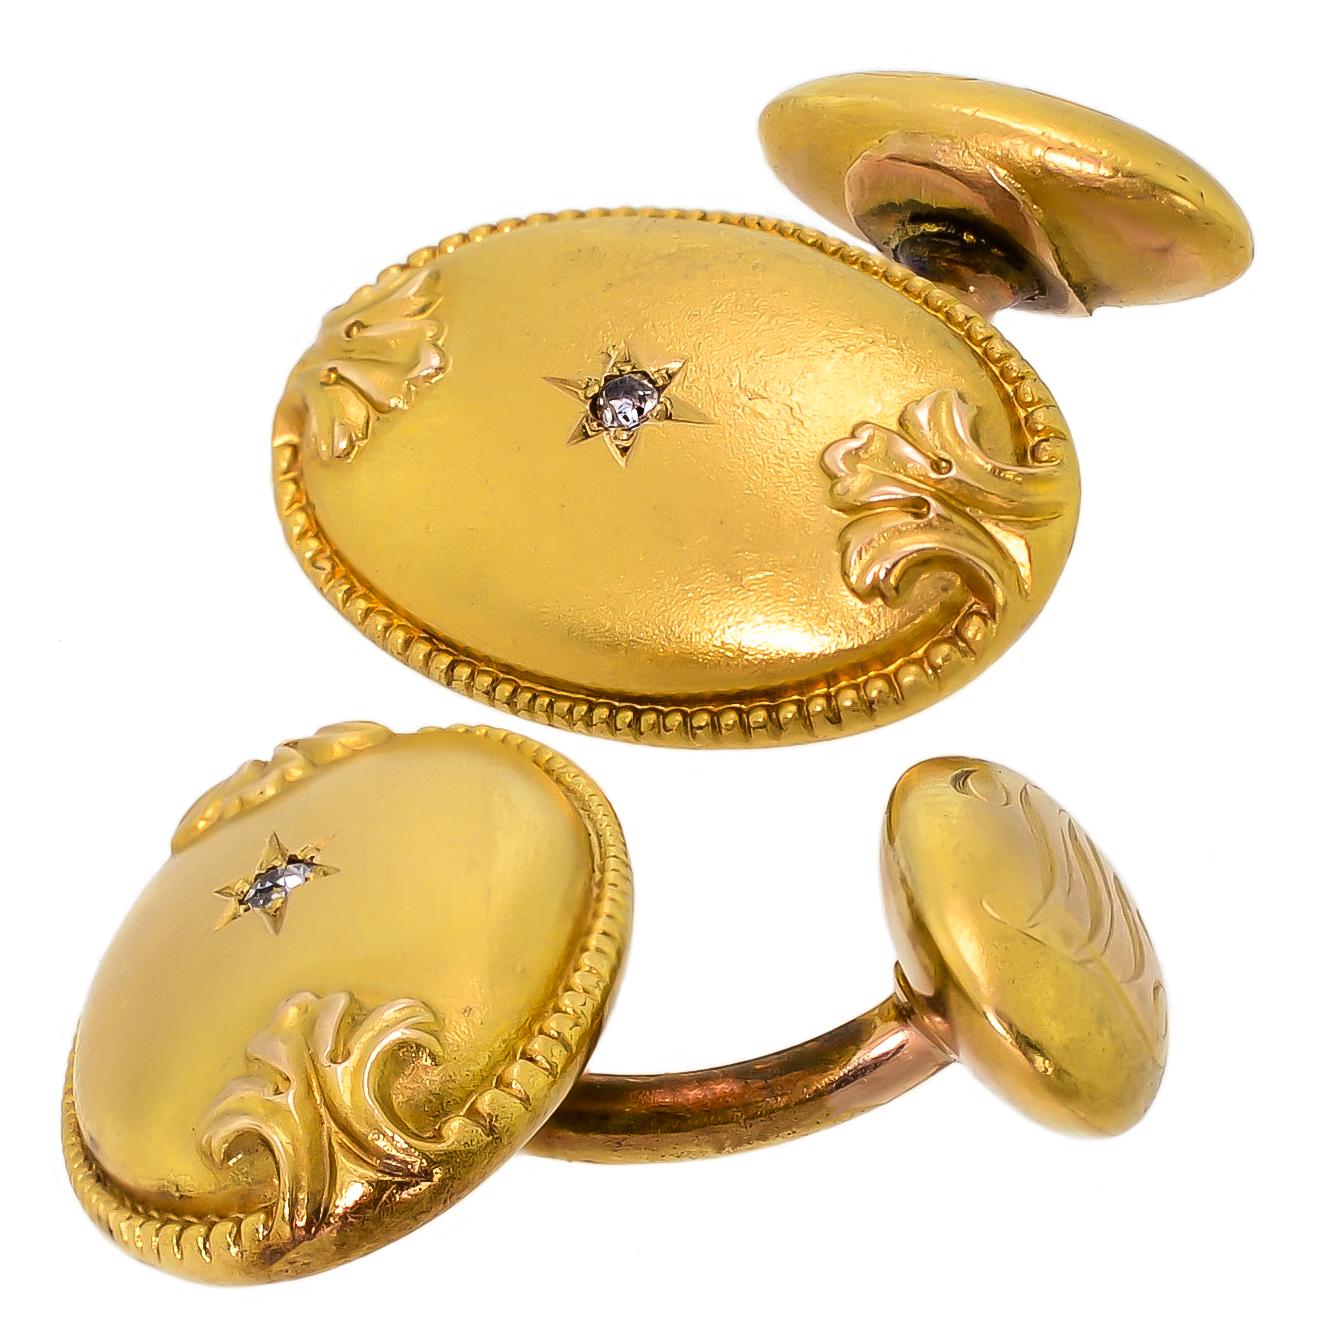 Diese exquisiten ovalen Manschettenknöpfe aus viktorianischem 18-karätigem Gelbgold mit Diamanten sind hübsch und maßgeschneidert und zeugen mit ihrem schlichten Design von Eleganz, Stil und Selbstbewusstsein. Die ovale, strukturierte Vorderseite